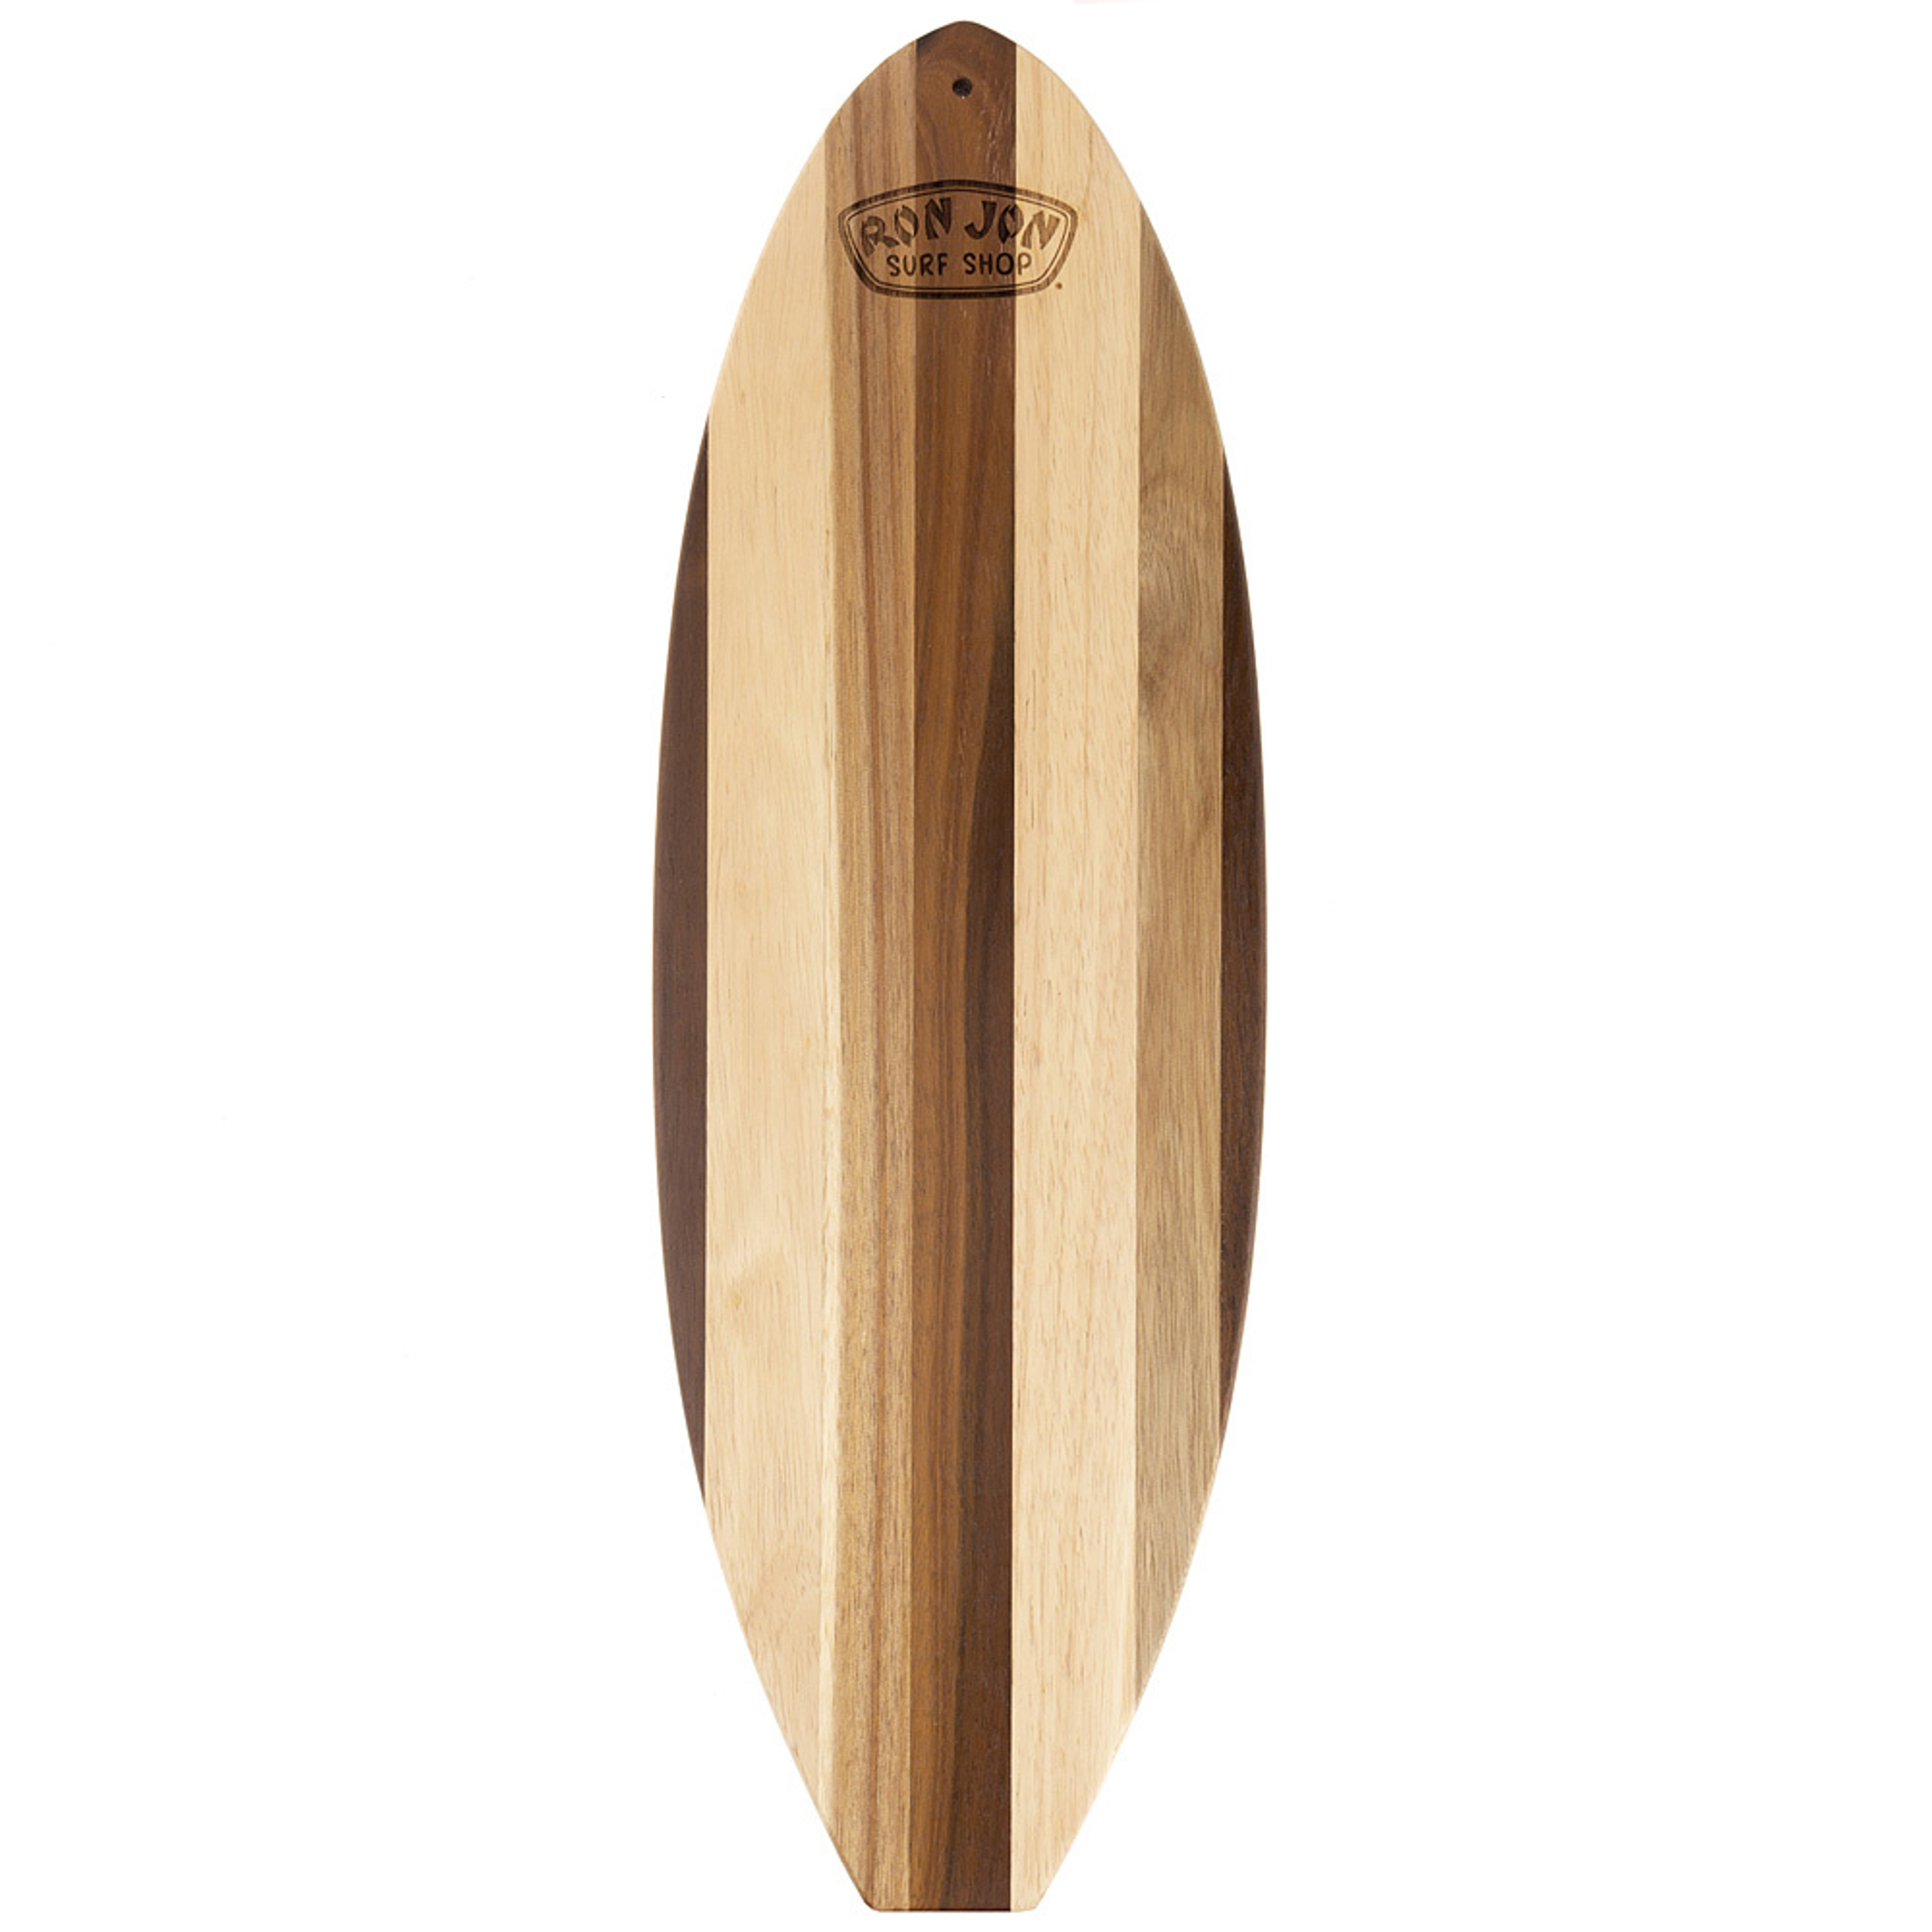 Ron Jon Big Surfboard Shiplap Cutting Board